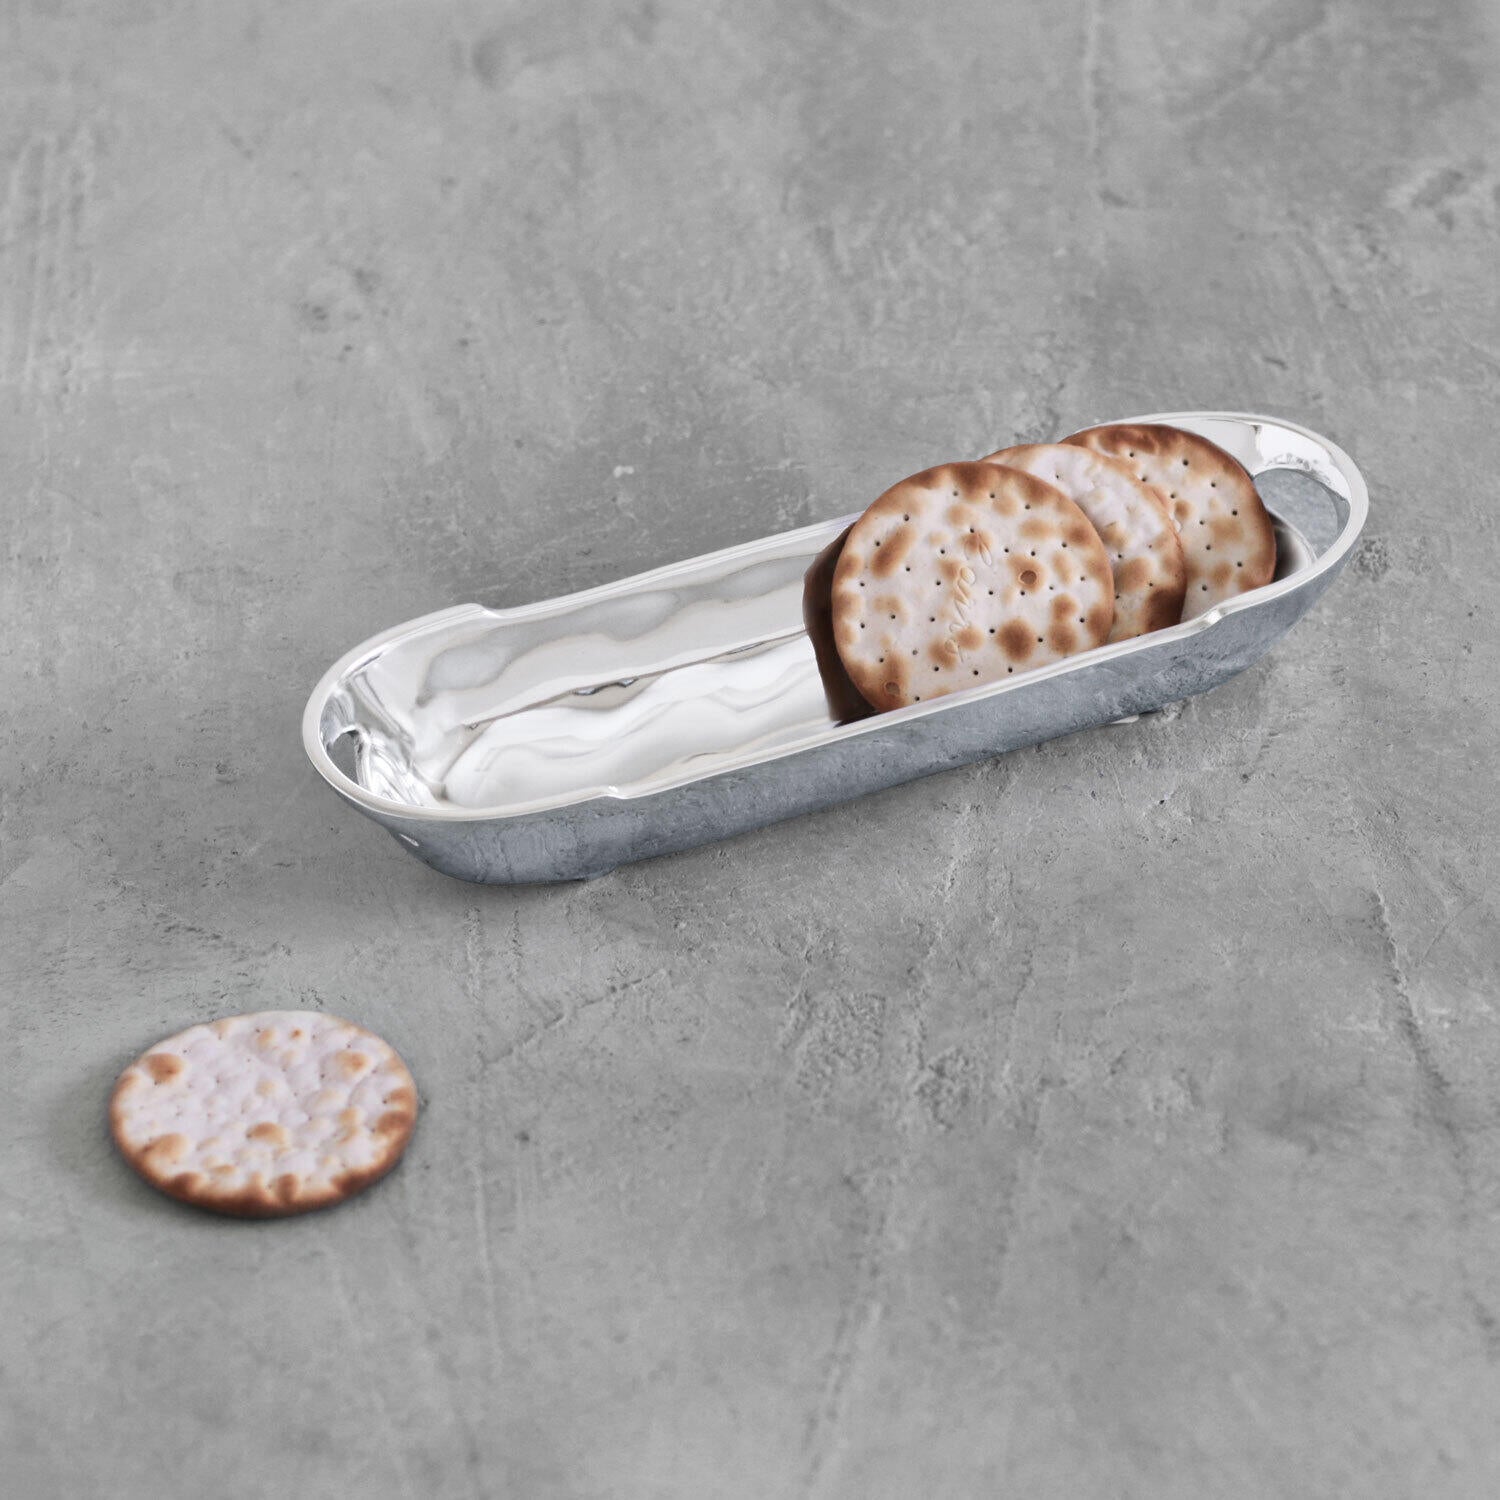 GIFTABLES Soho Cracker Tray with Handles